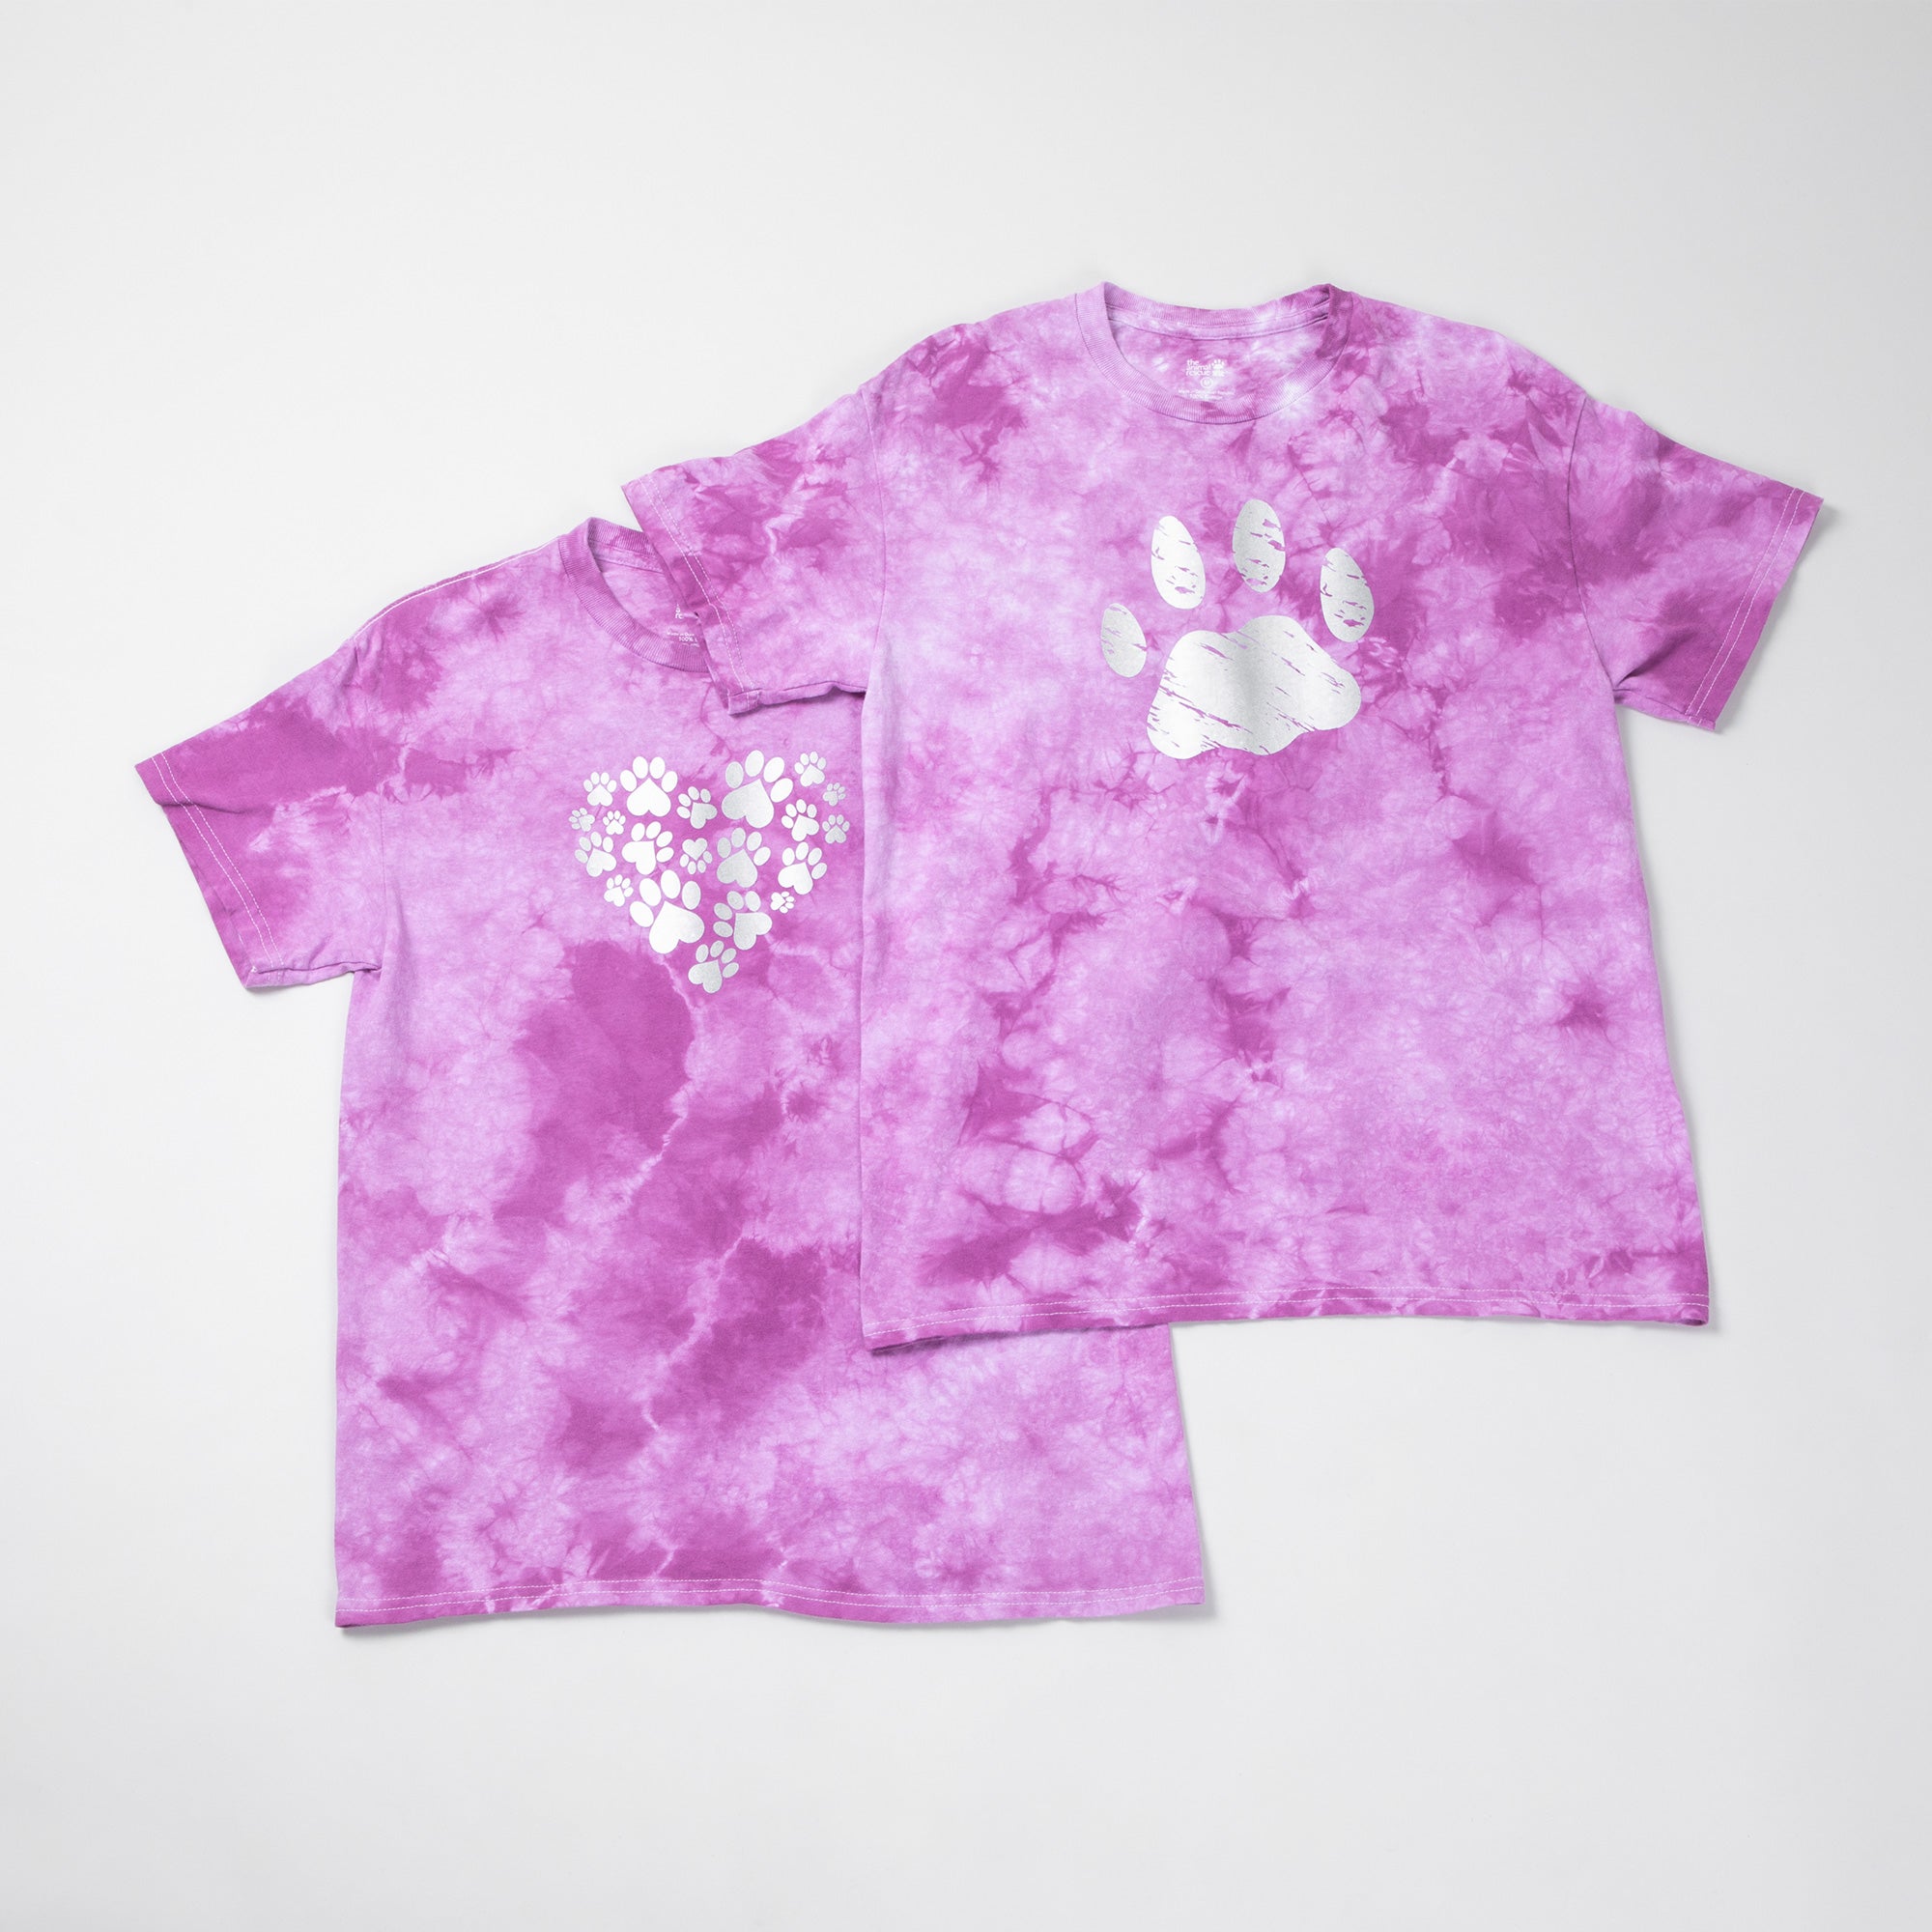 Paw Print Boysenberry Tie-Dye T-Shirt - Heart Paws - XL